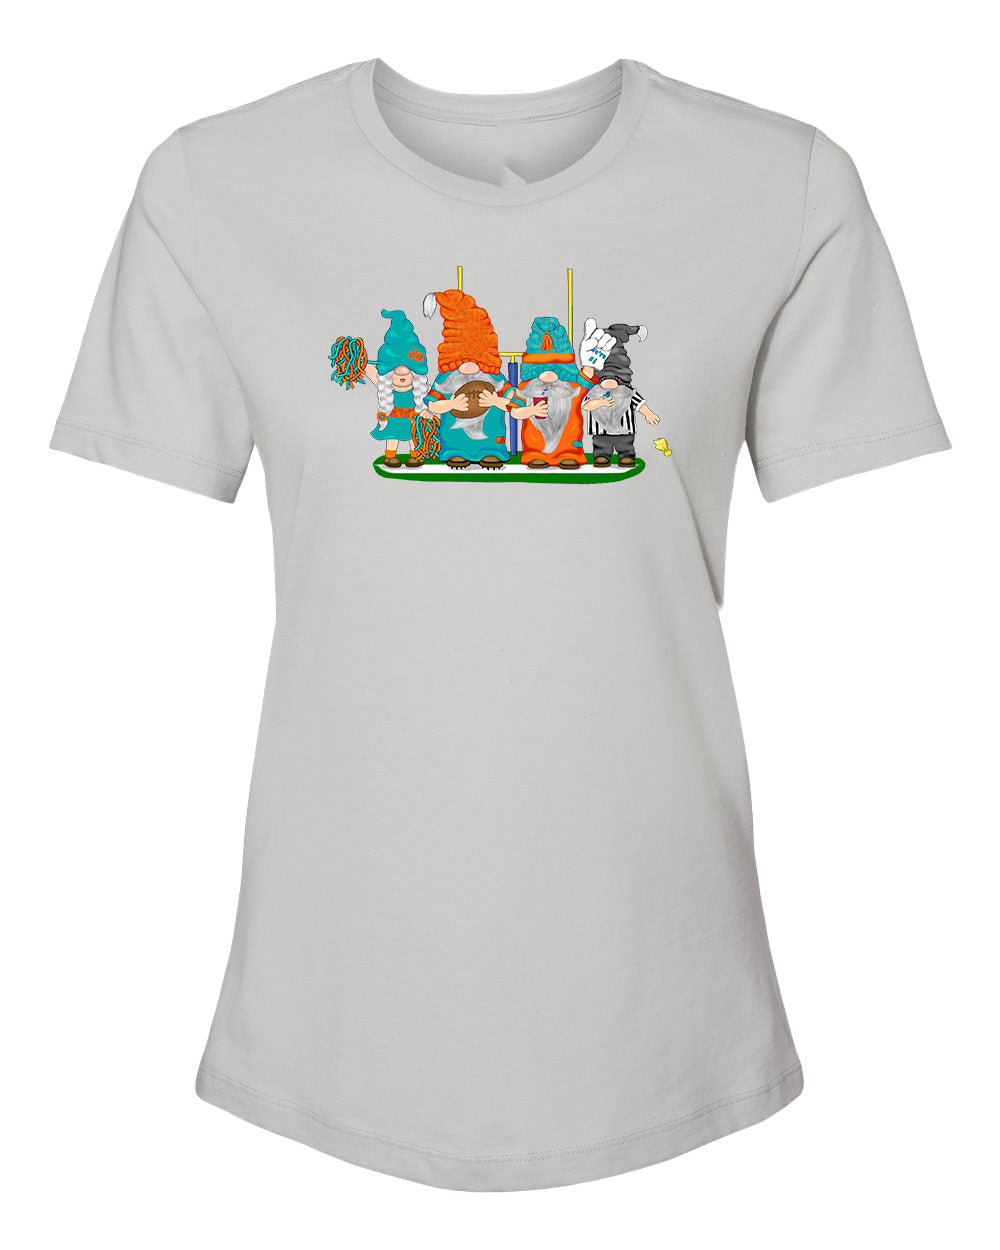 Aqua & Orange Football Gnomes on Women's T-shirt (similar to Miami)